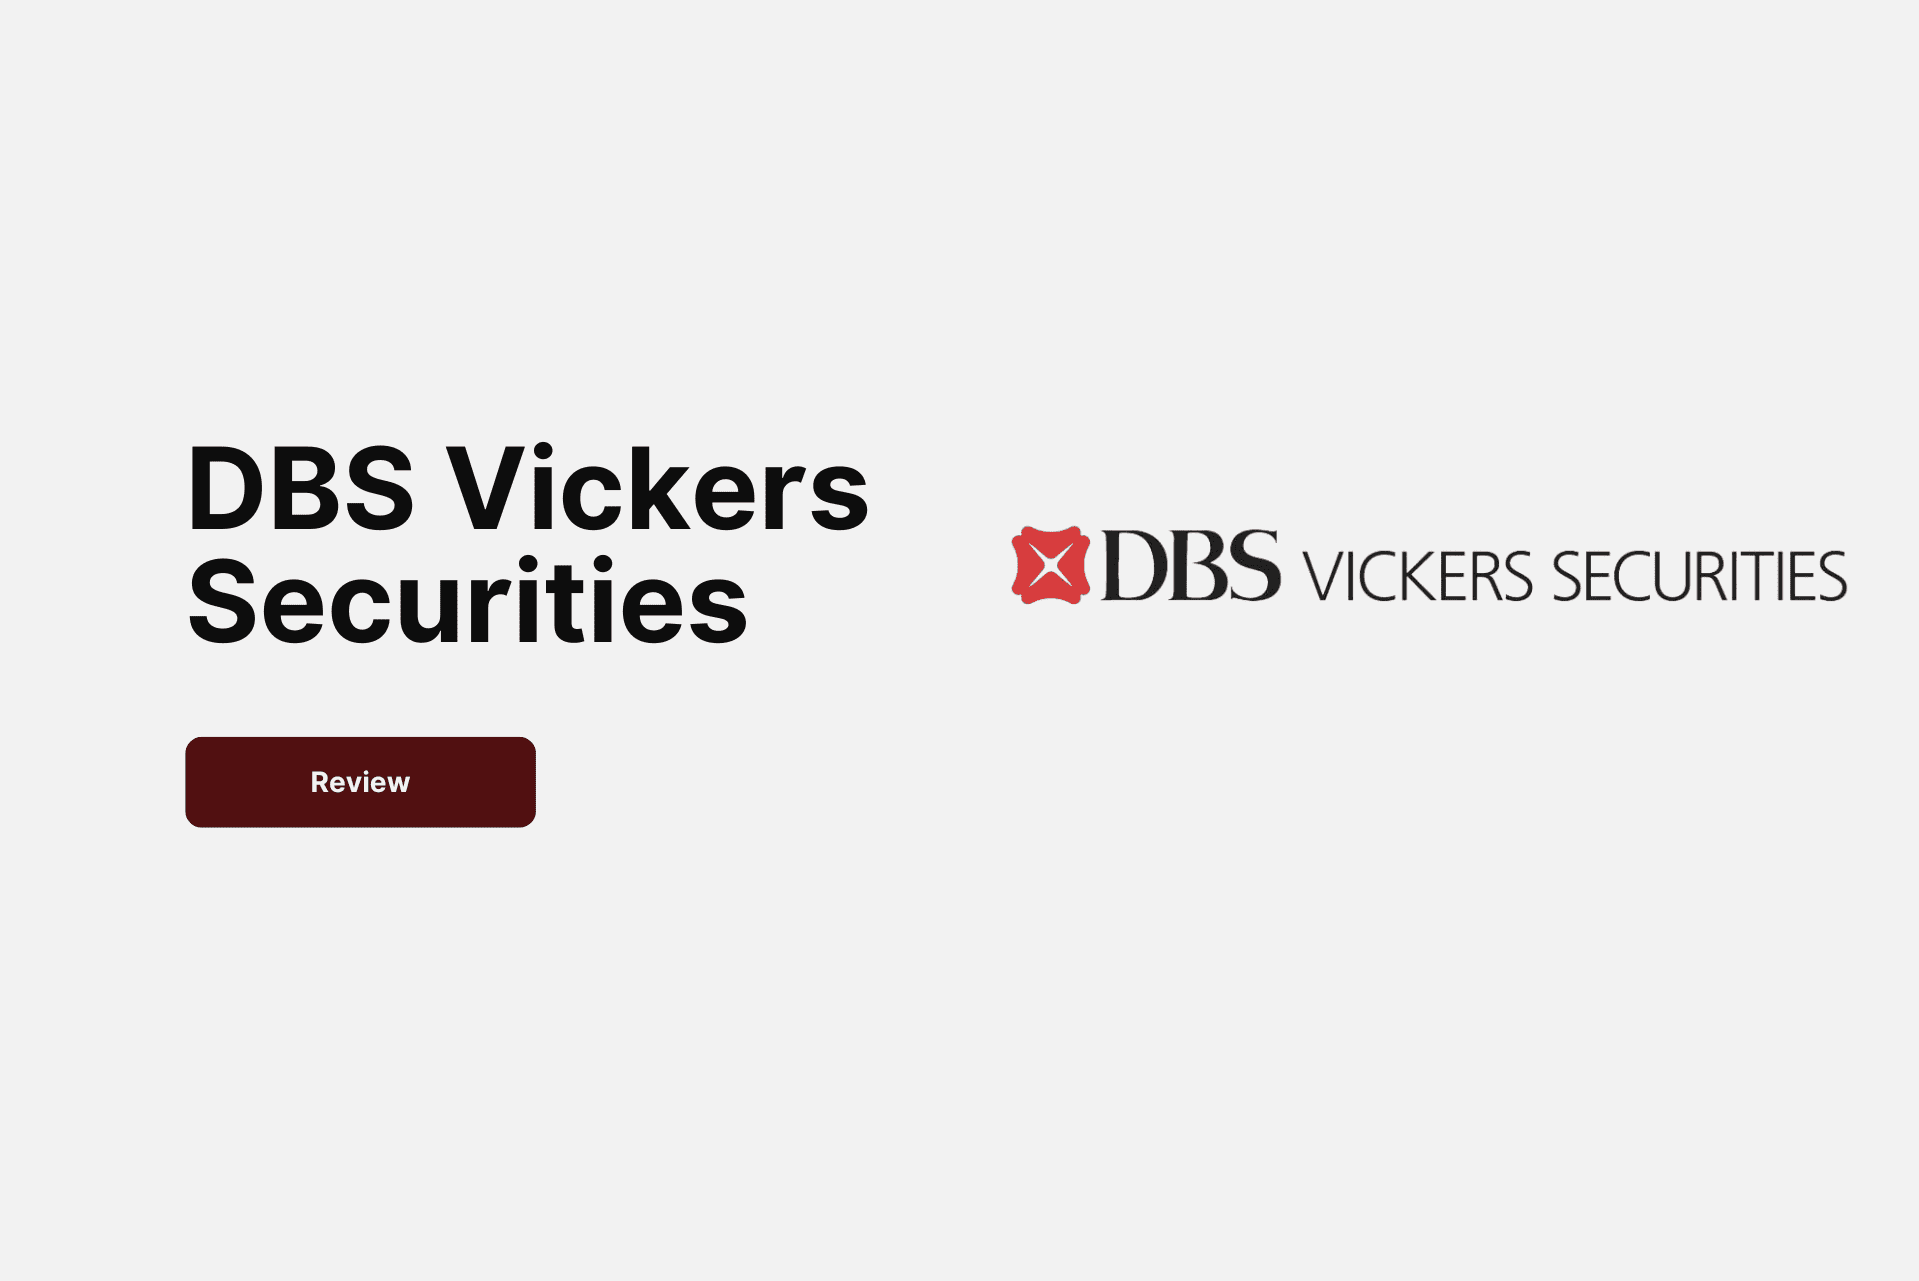 dbs vickers securities logo